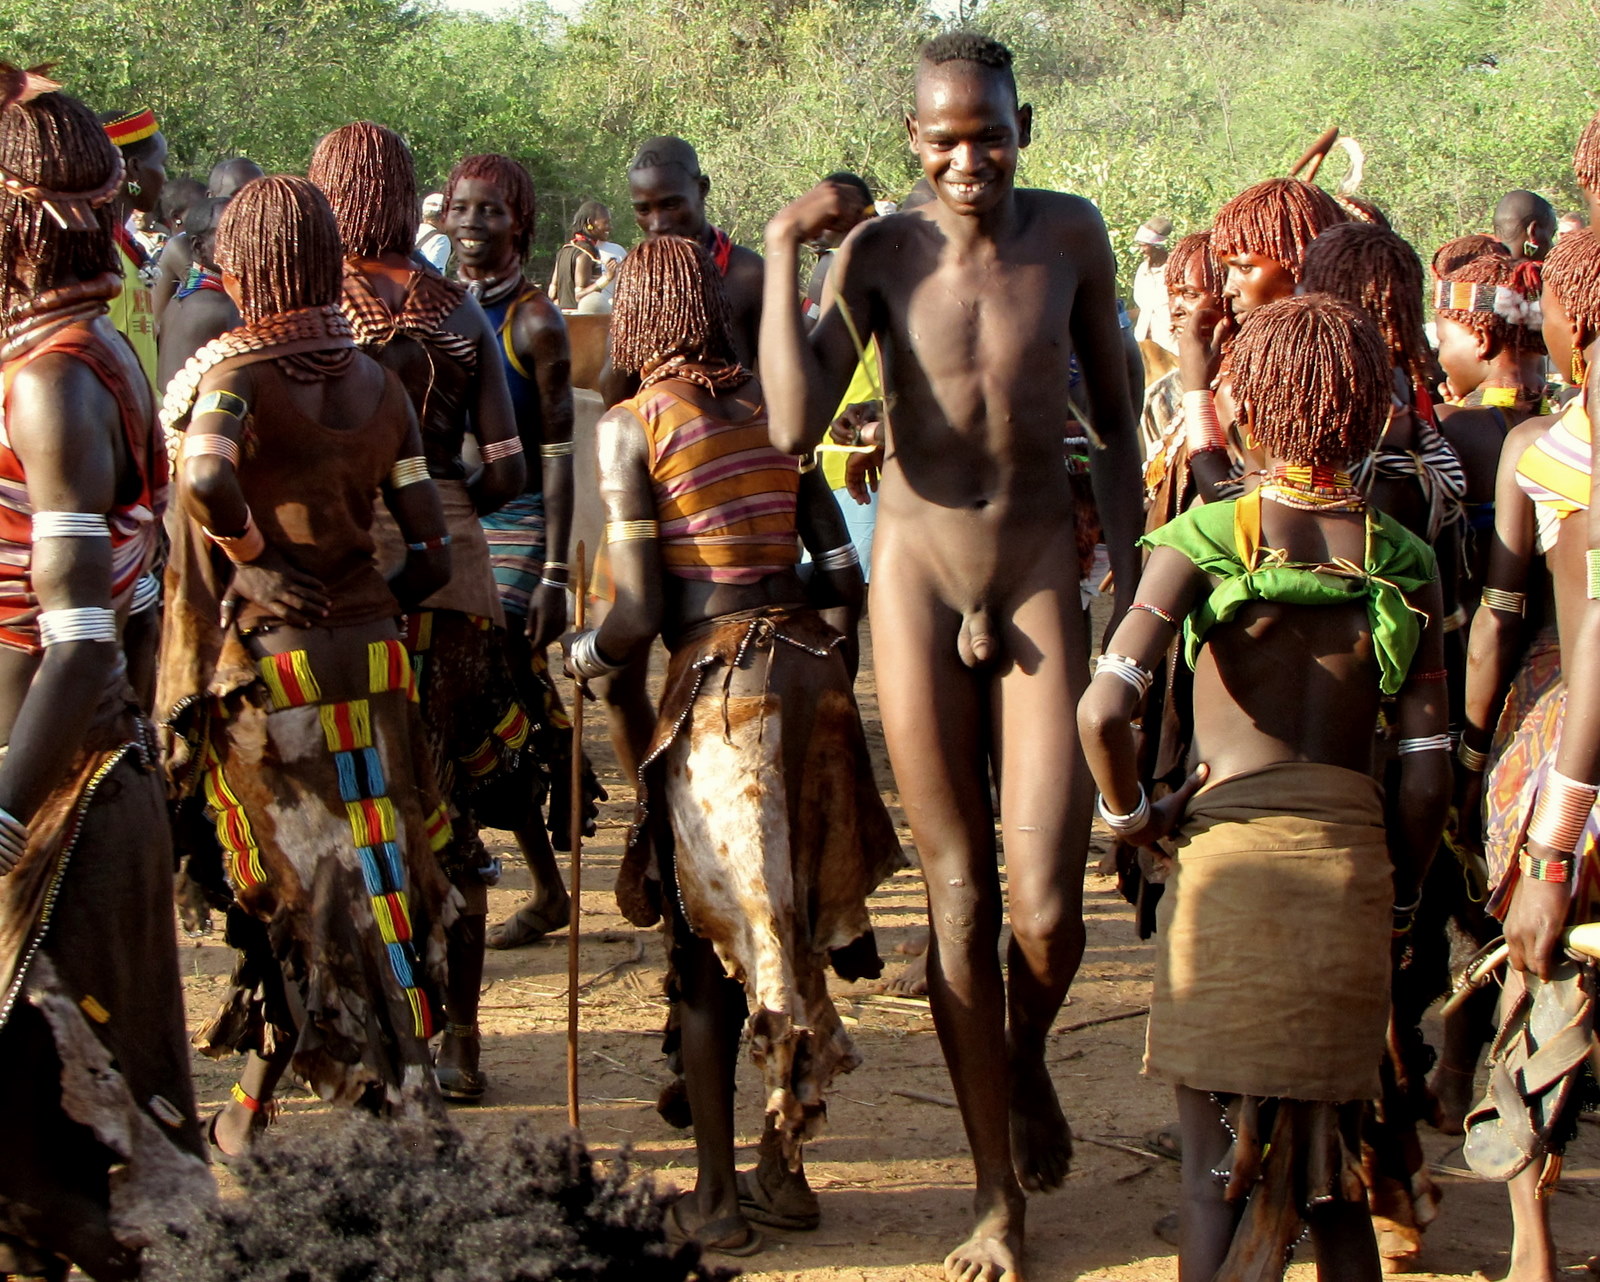 племя с голыми мужиками фото 20